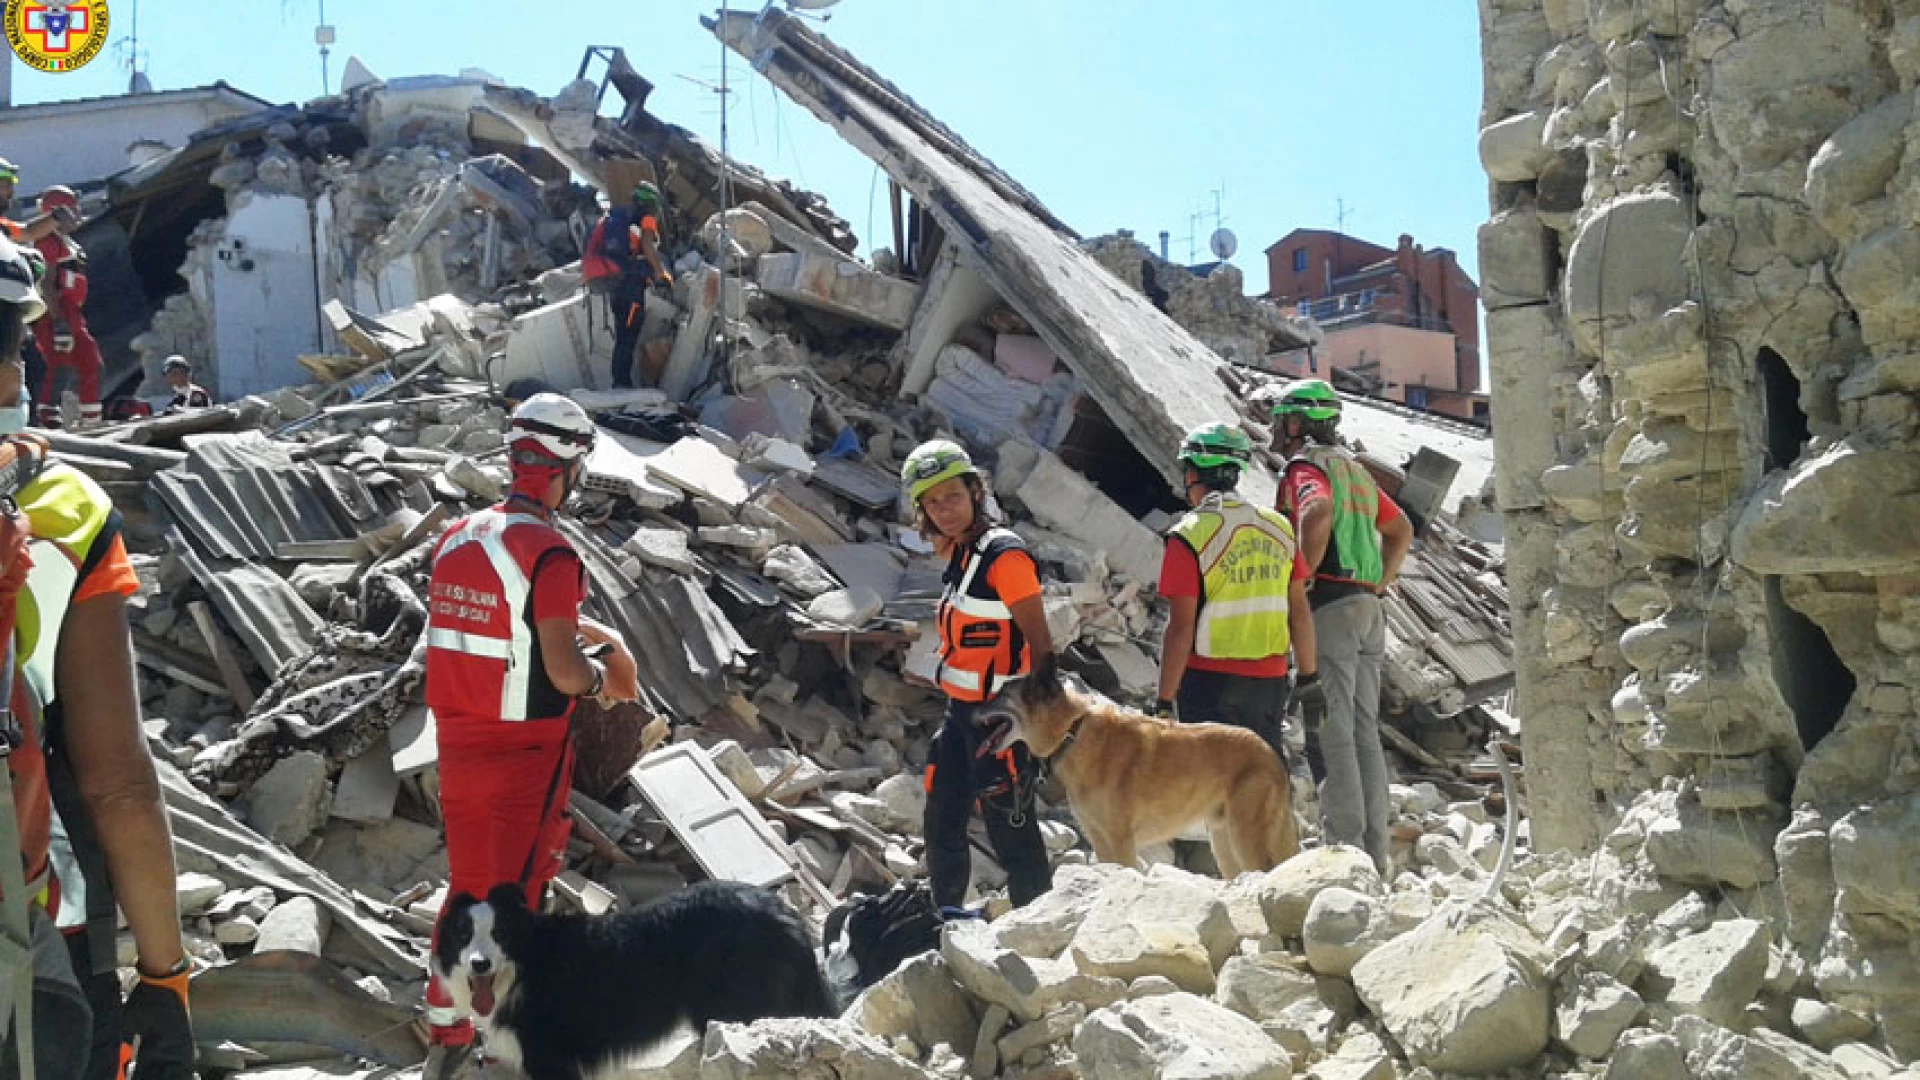 Emergenza sisma in centro Italia: Aggiornamento interventi di soccorso e criticità operative da parte della molisana del Soccorso Alpino.